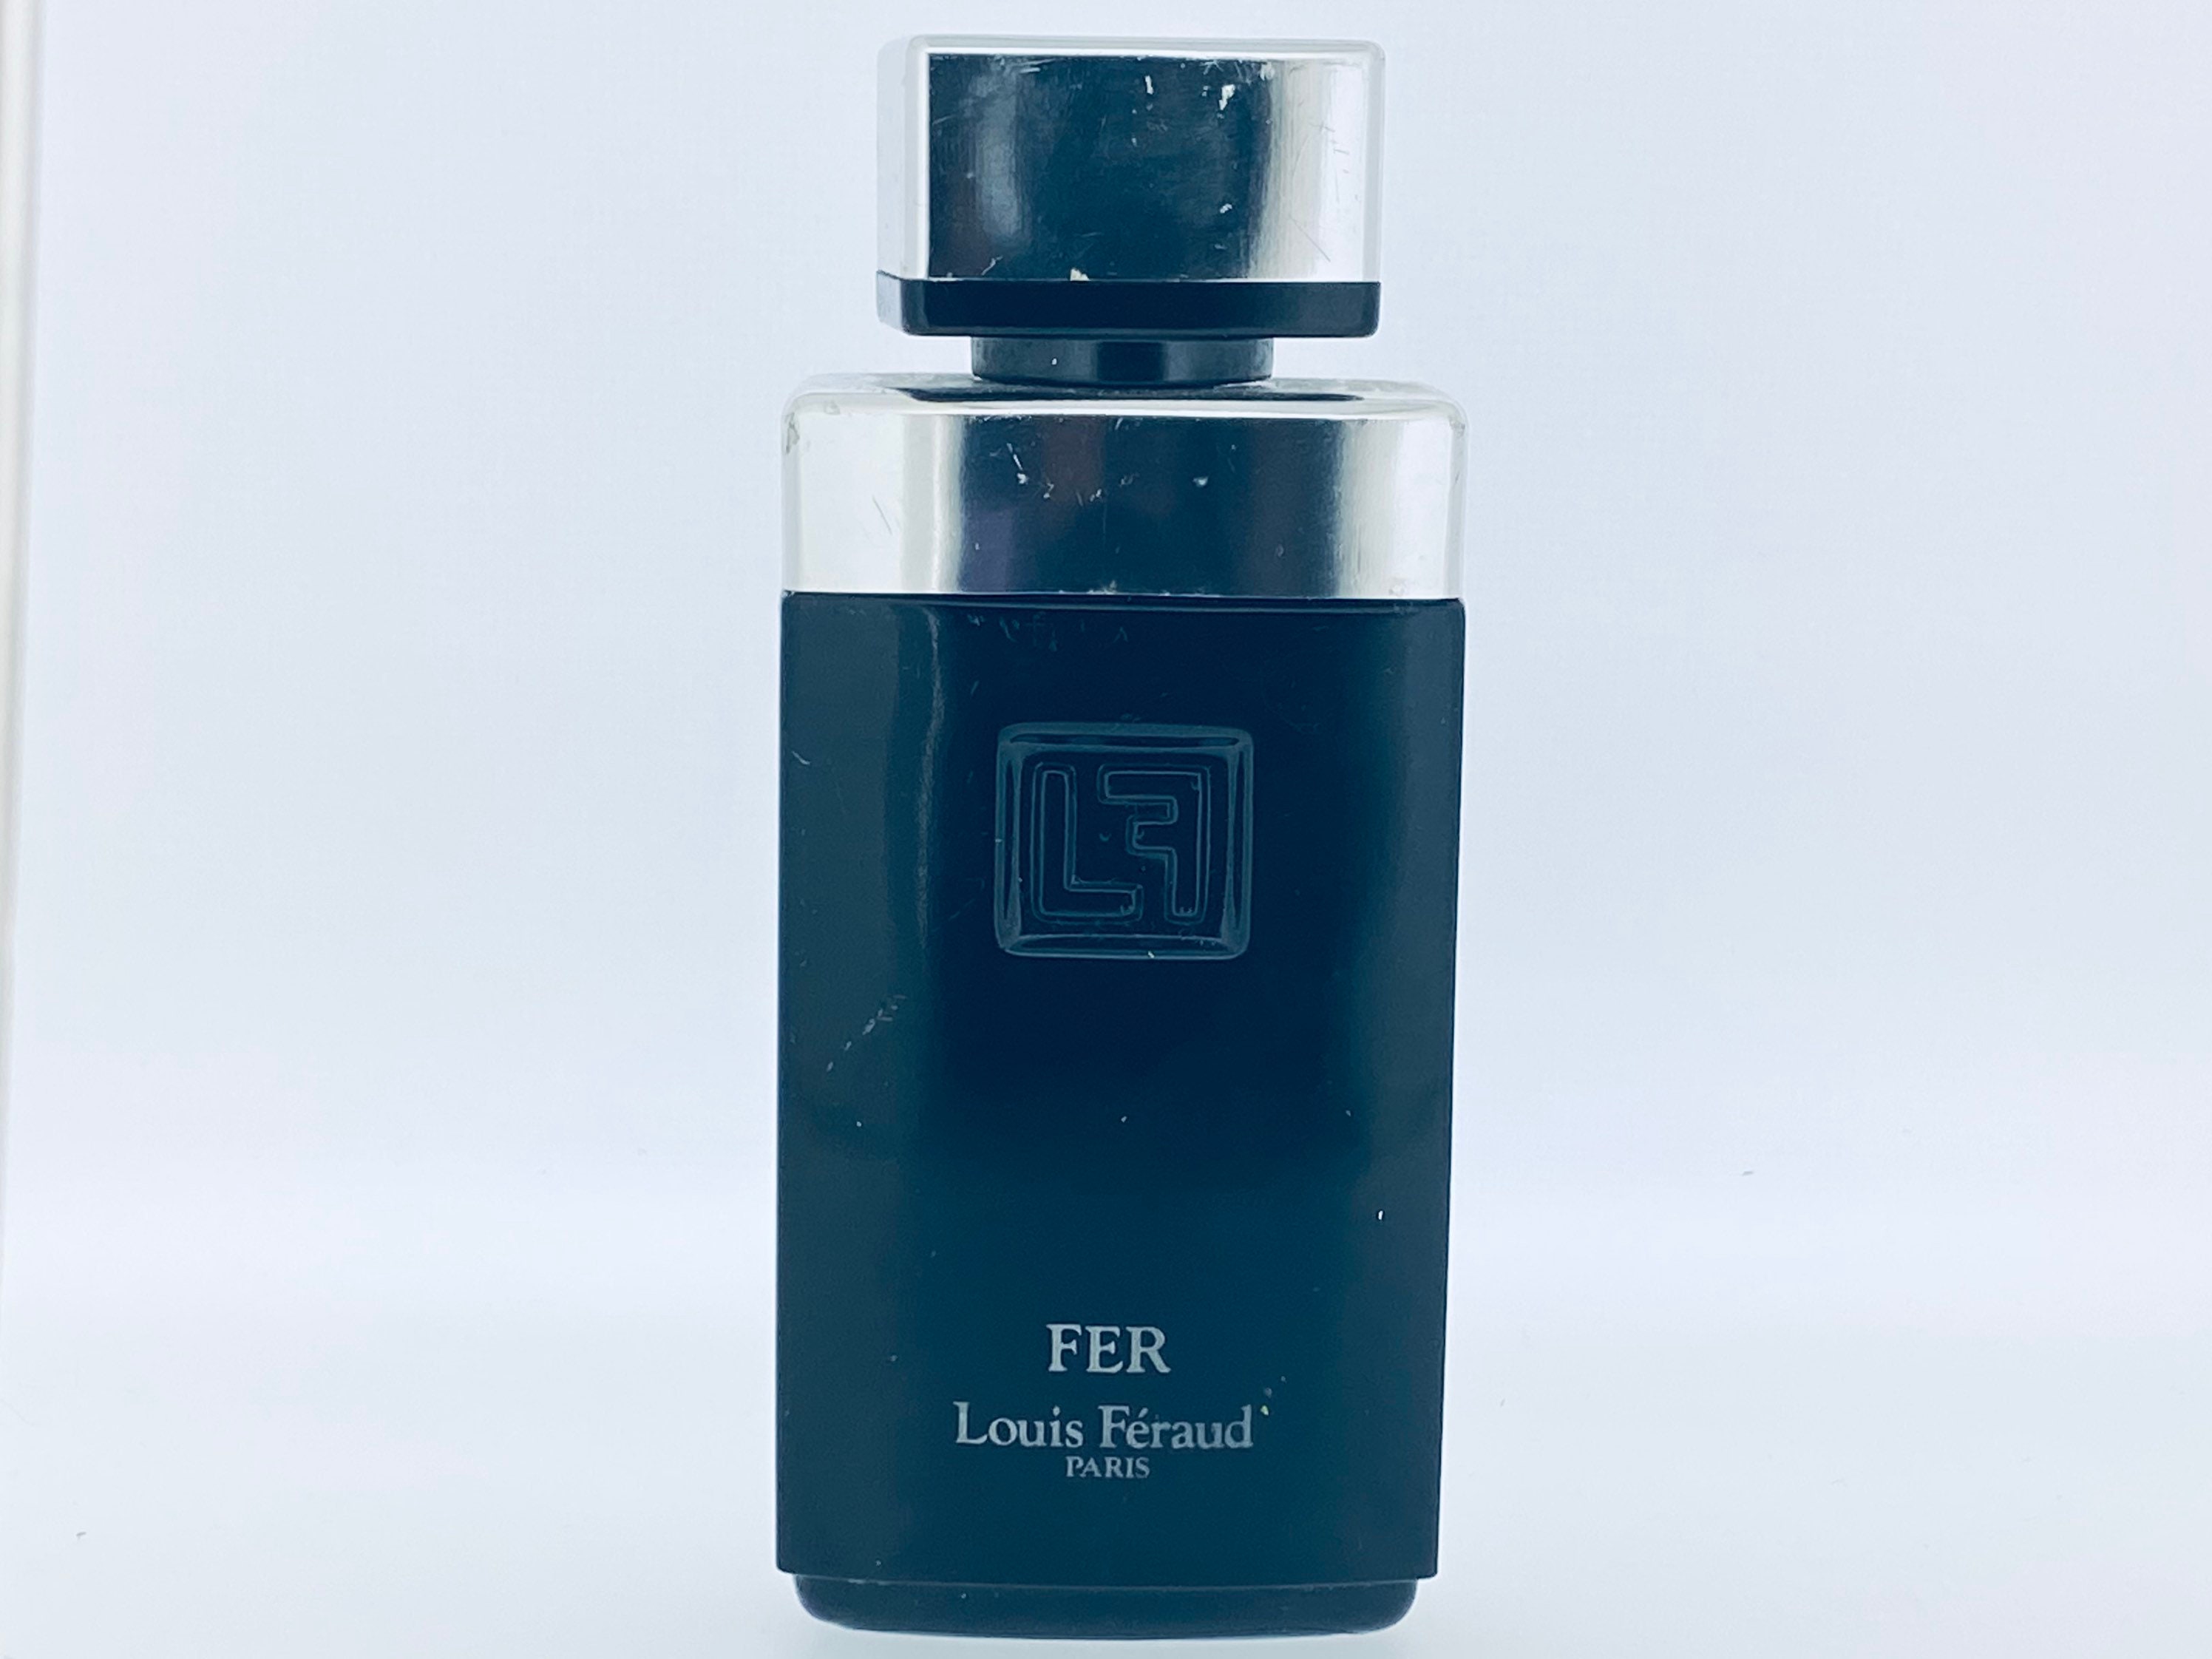 Louis Feraud Fer Eau De Toilette Edt 100ml 3,4 Fl. Oz. Splash Not Spray  Perfume for Man Rare Vintage 1982 -  UK